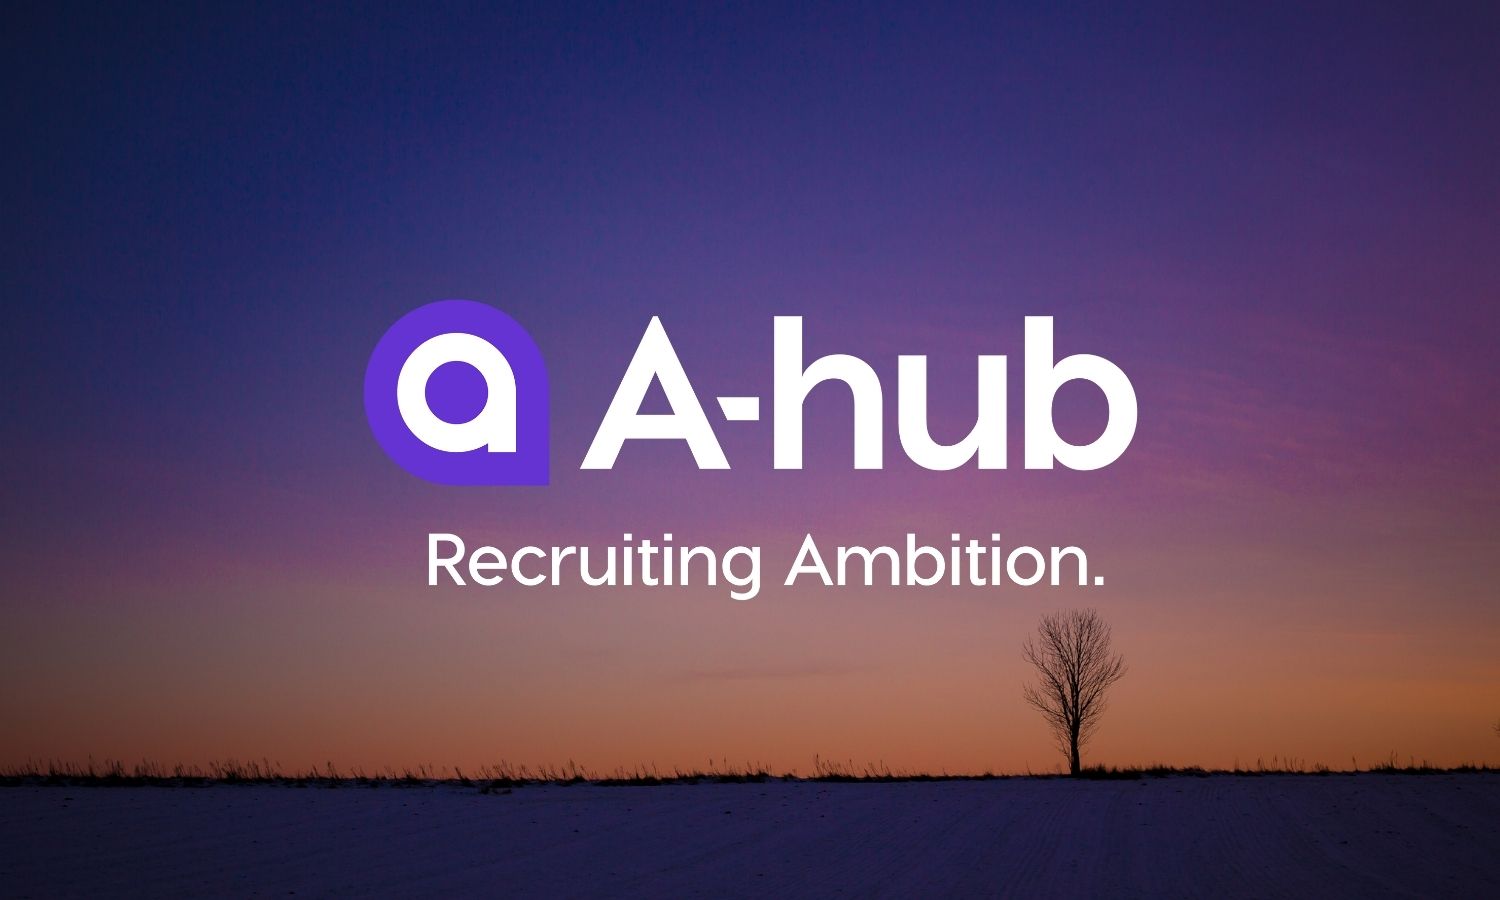 A-hub öppnar nytt kontor i Vänersborg – ”trestad”!